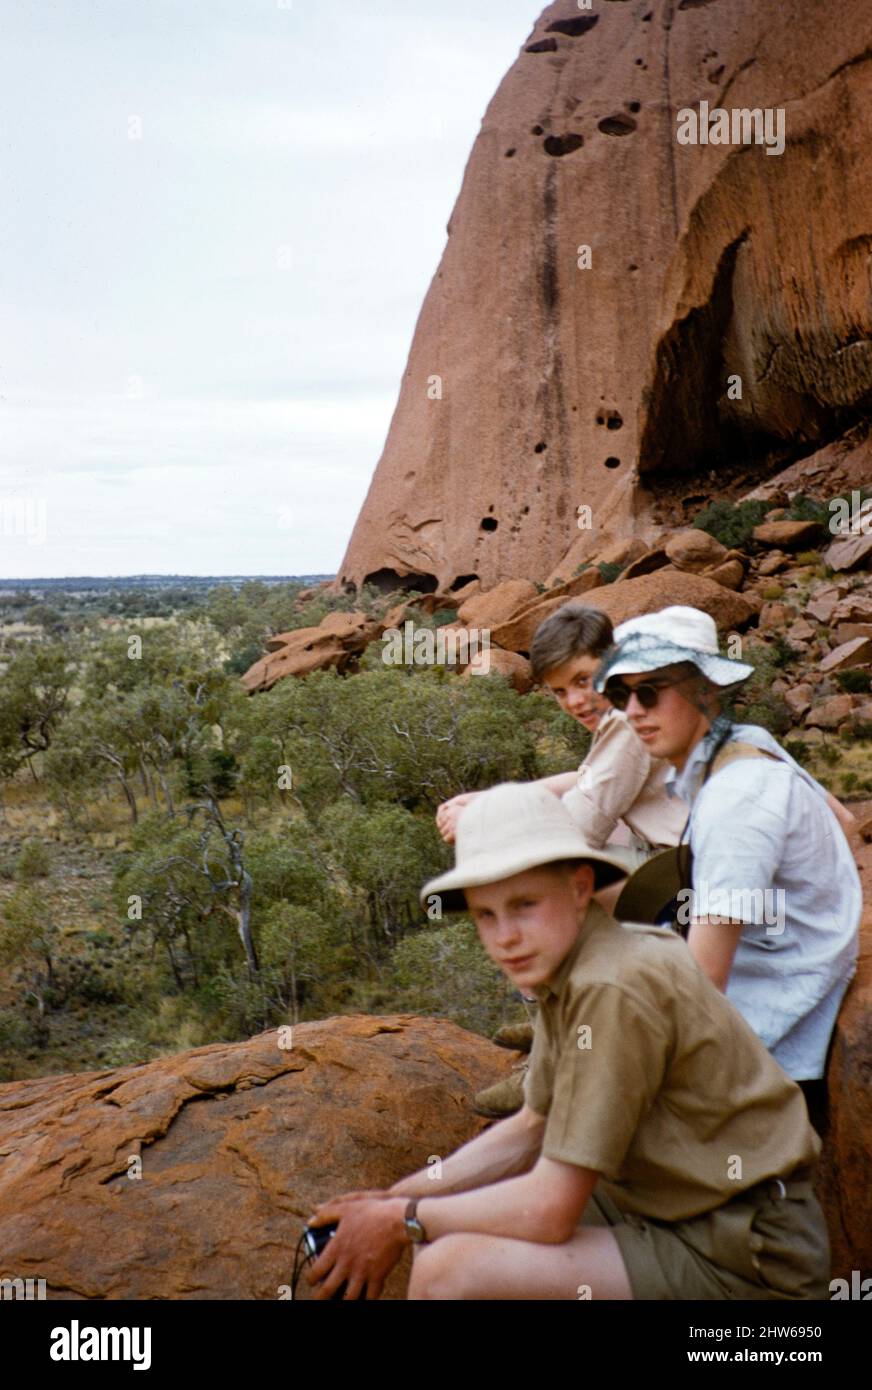 Melbourne Grammar School Expedition, Northern Territory, Australien in 1956 Jungen am Ayers Rock, Uluru Stockfoto